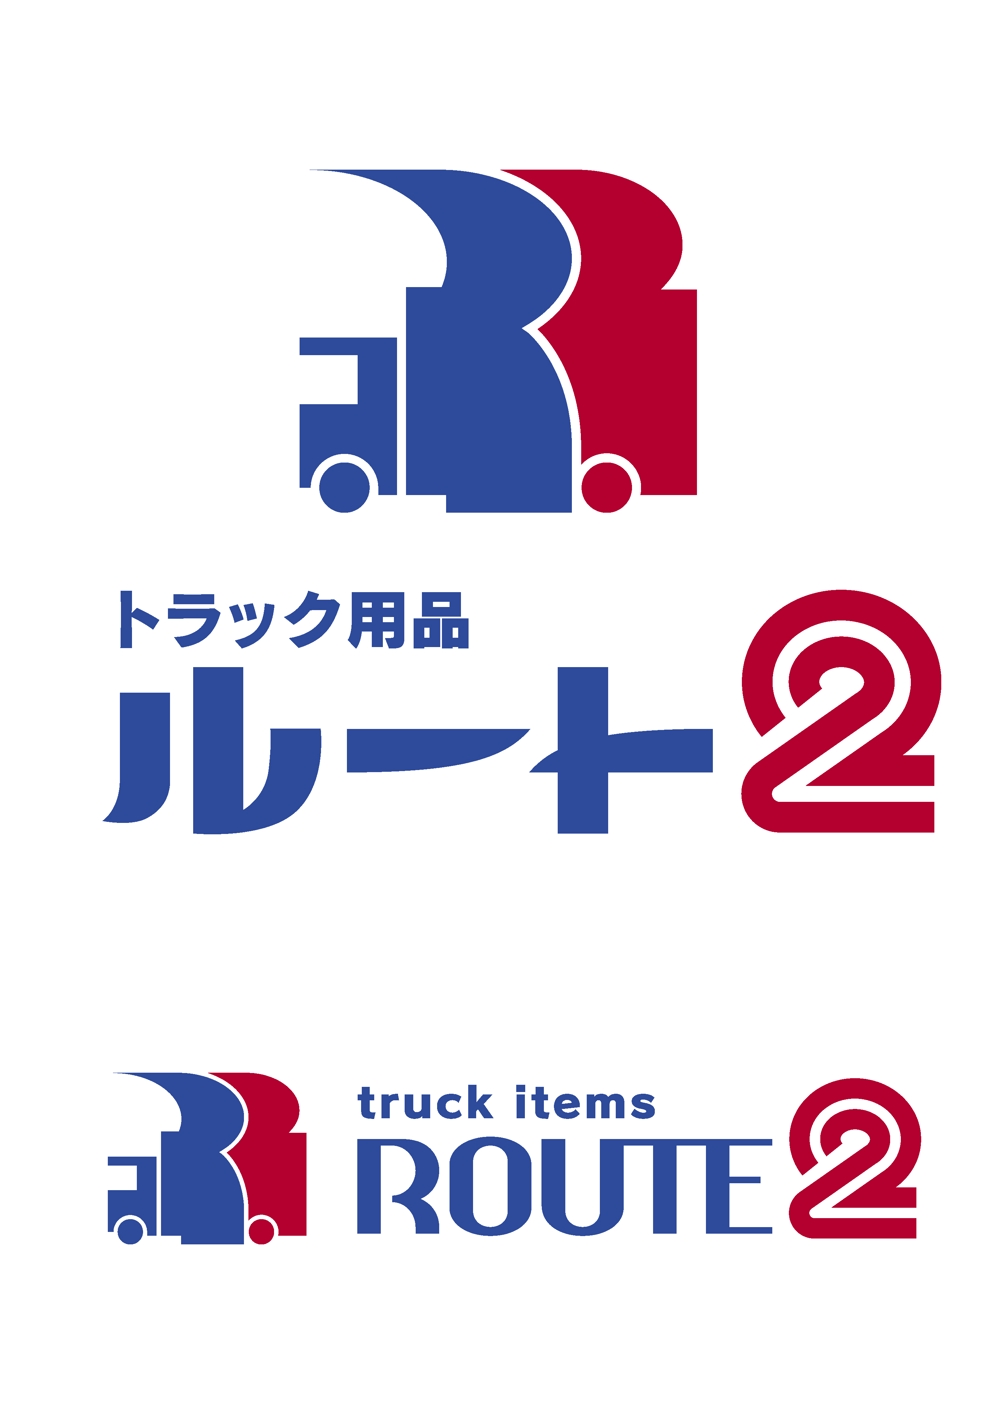 株式会社 セノオ産商 様　“トラック用品ルート２” キャラクターロゴ